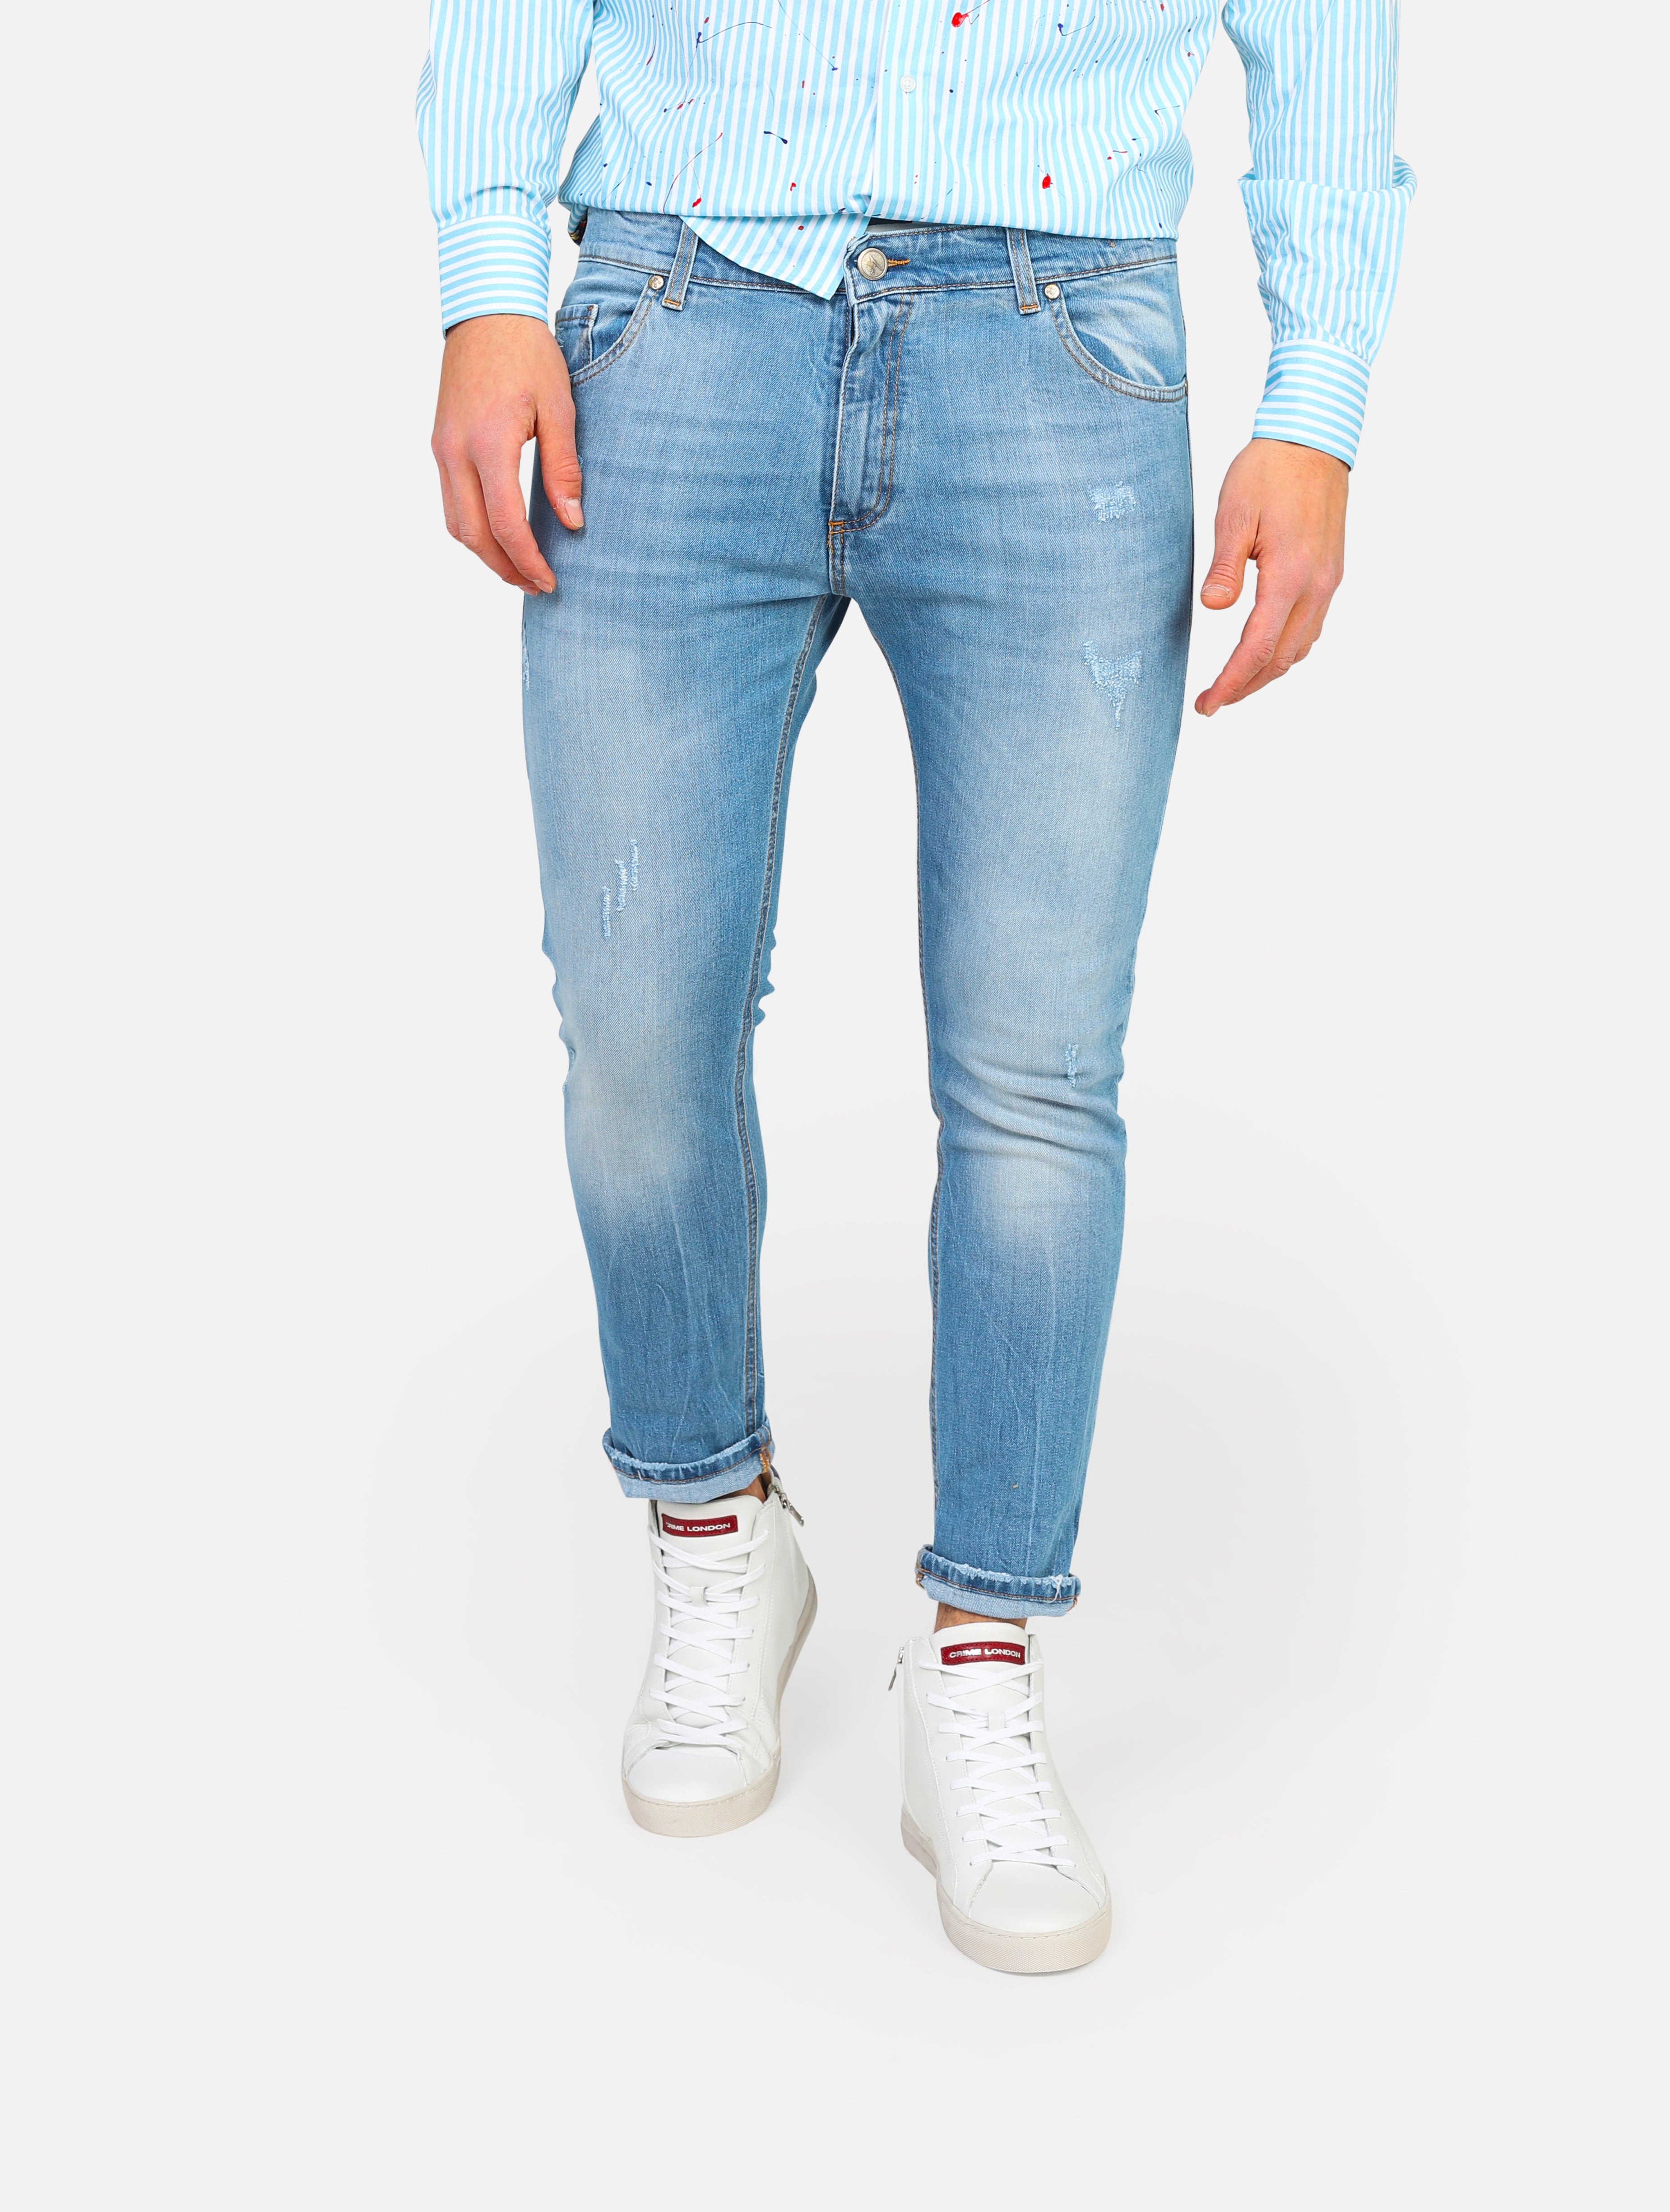 Jeans 5 tasche con tasca patch posteriore in fantasia, piccole lacerazioni -  denim man  - 1